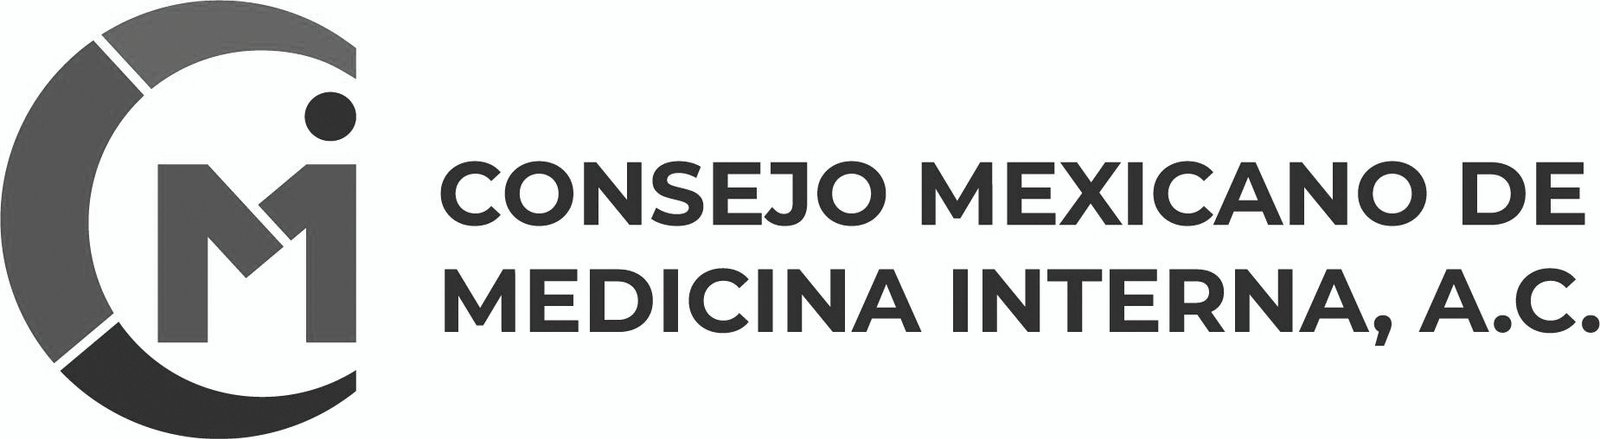 Consejo Mexicano de Medicina Interna